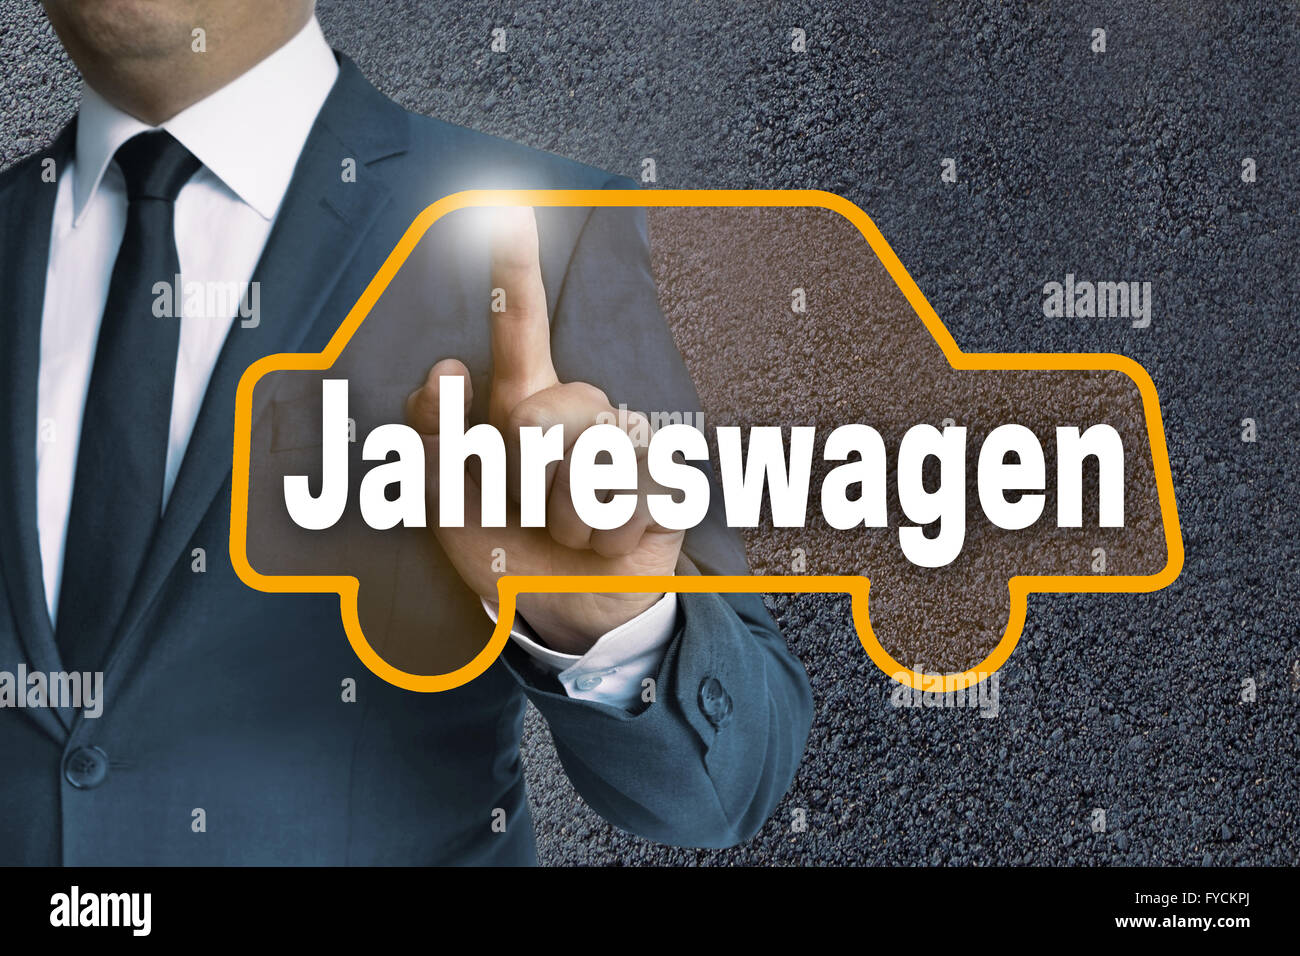 Jahreswagen (in tedesco Automobile usata) touchscreen automatico azionato da parte dell'imprenditore concetto. Foto Stock